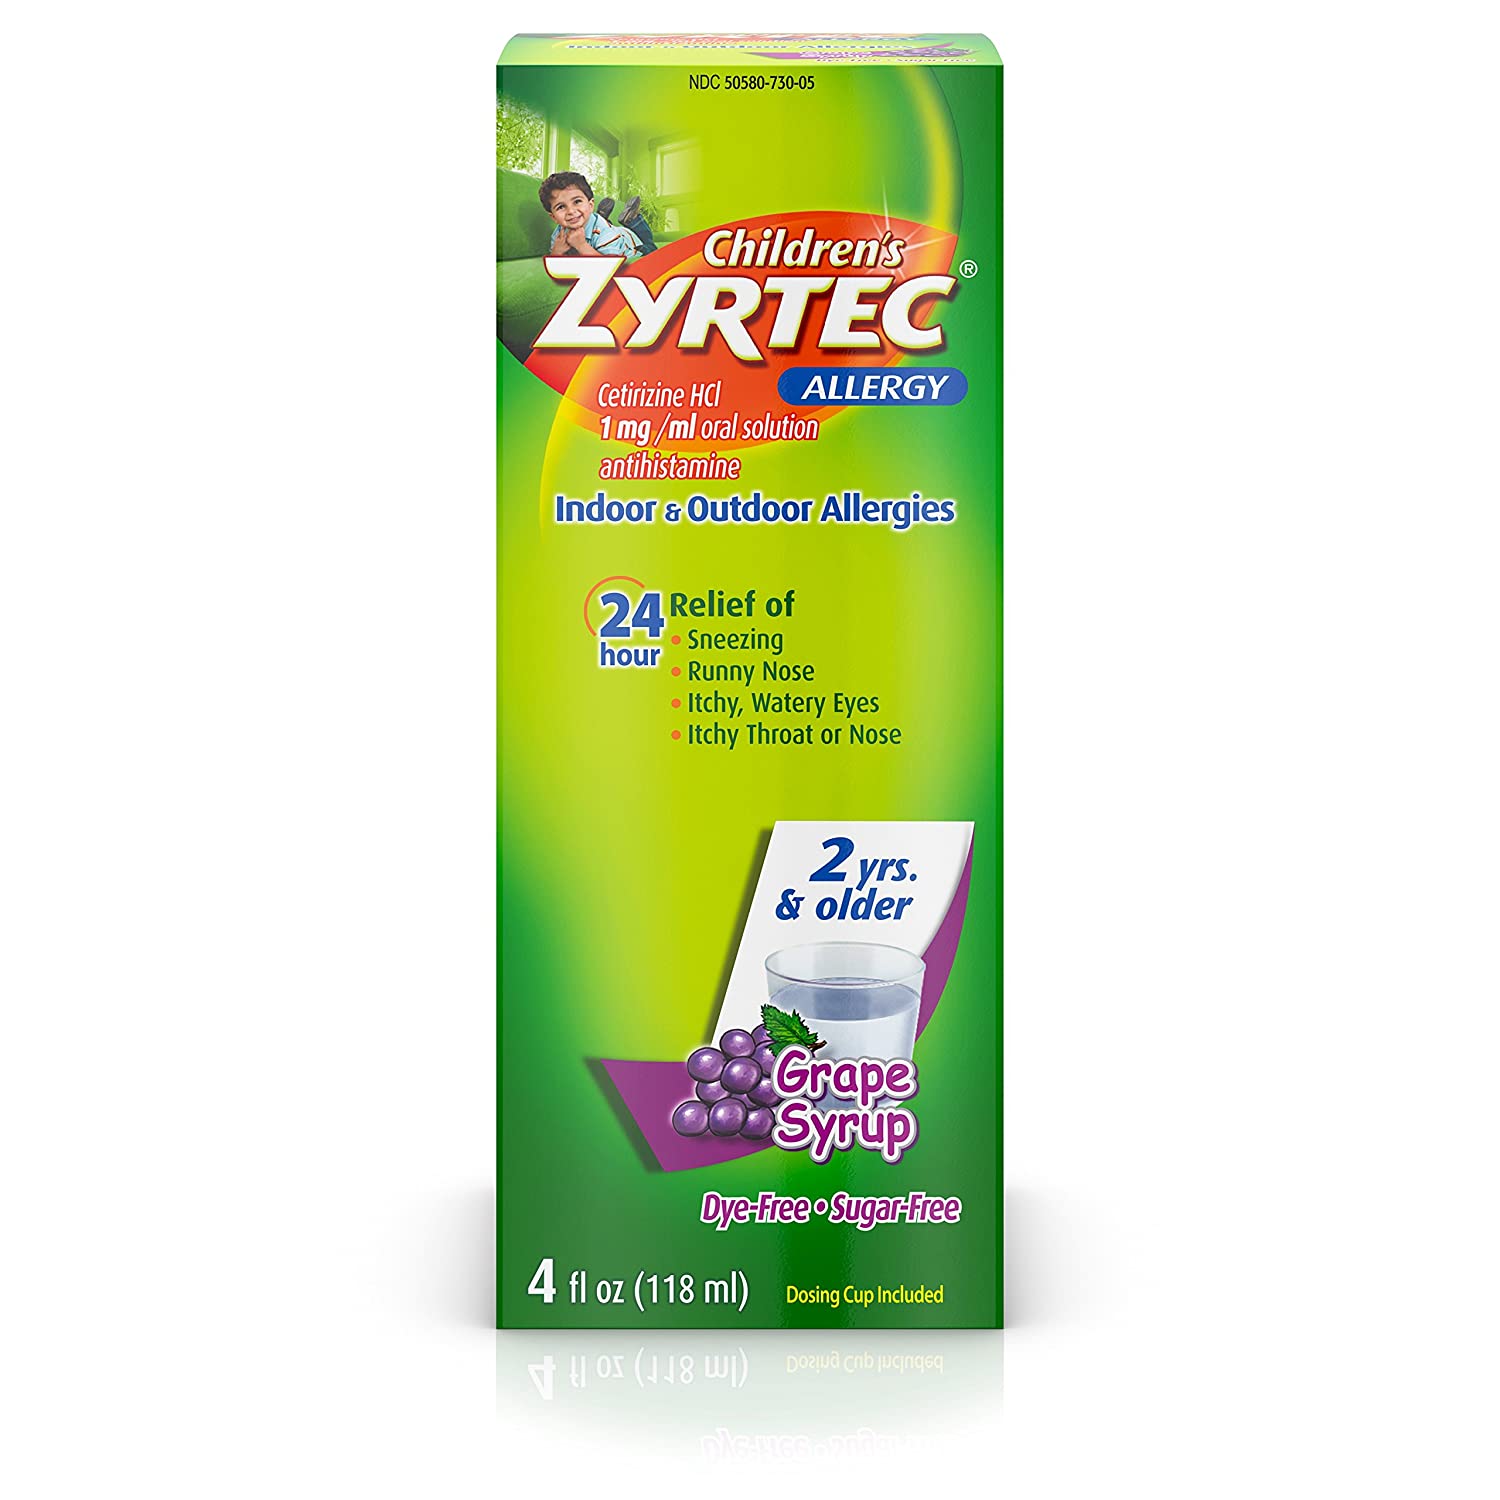 Zyrtec 24 Hr Children’s Allergy Syrup with Cetirizine, Dye- & Sugar-Free, Grape Flavor